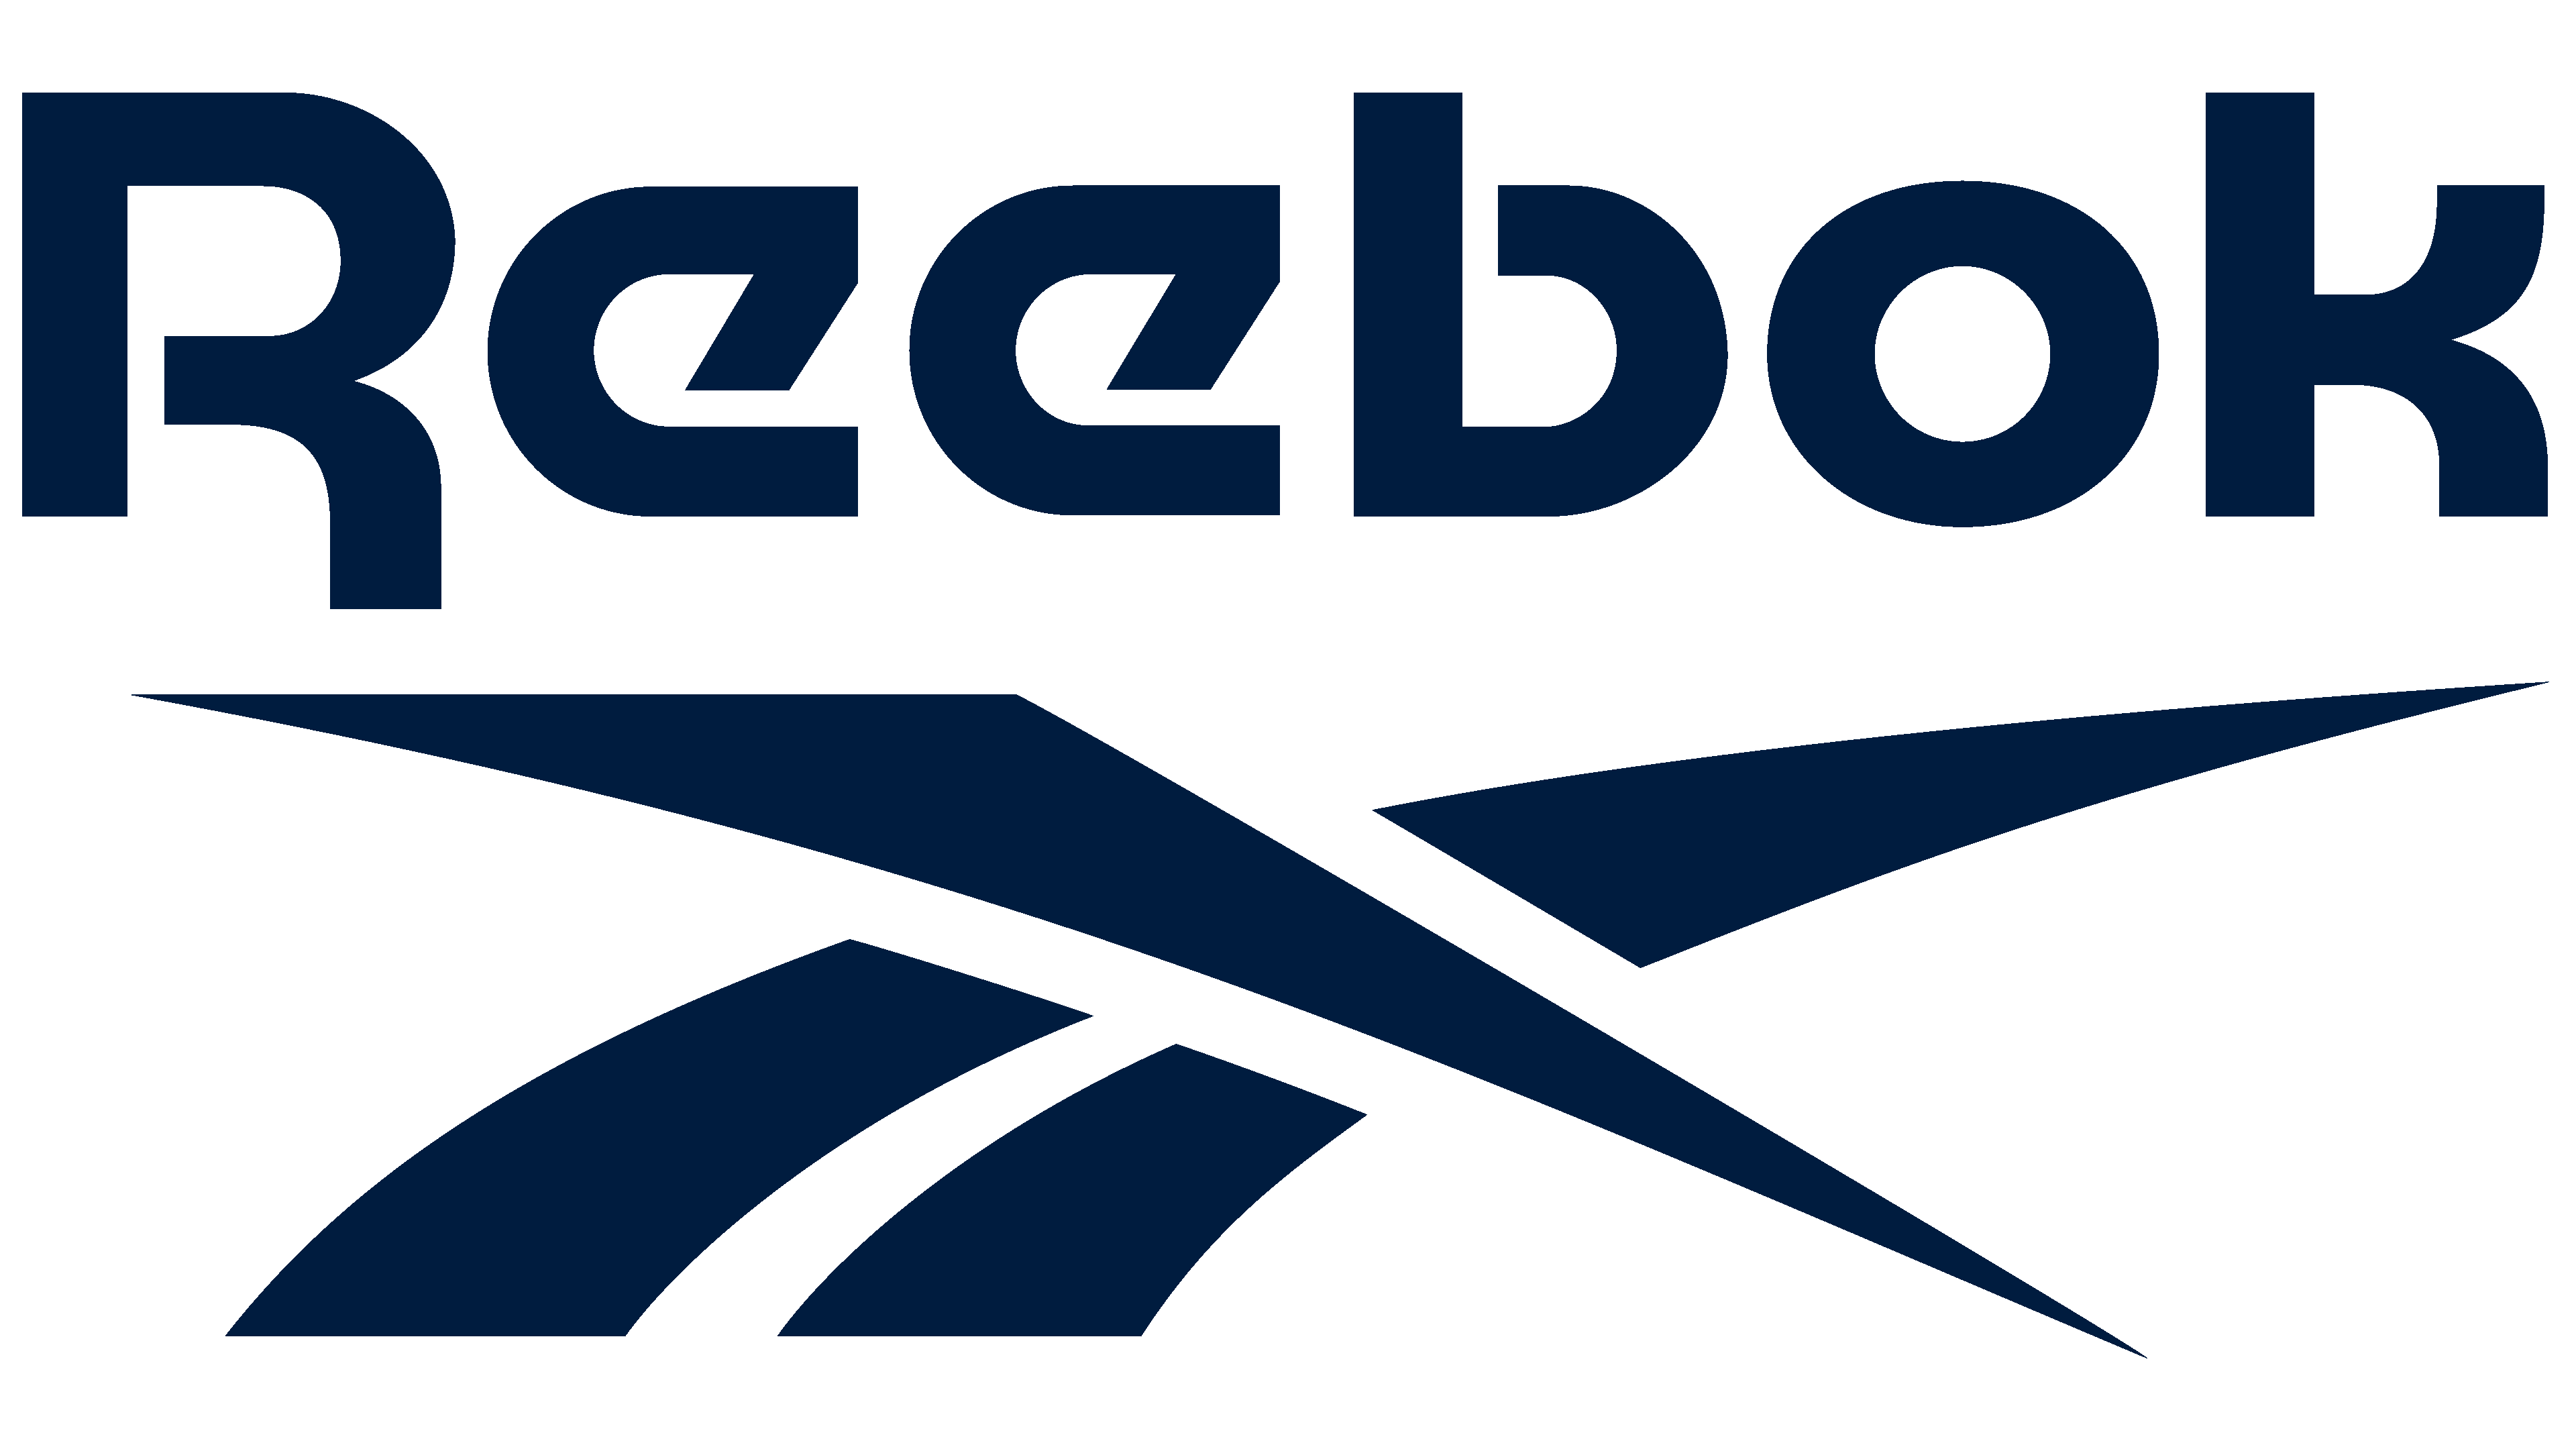 Reebok Logo histoire, signification de l'emblème